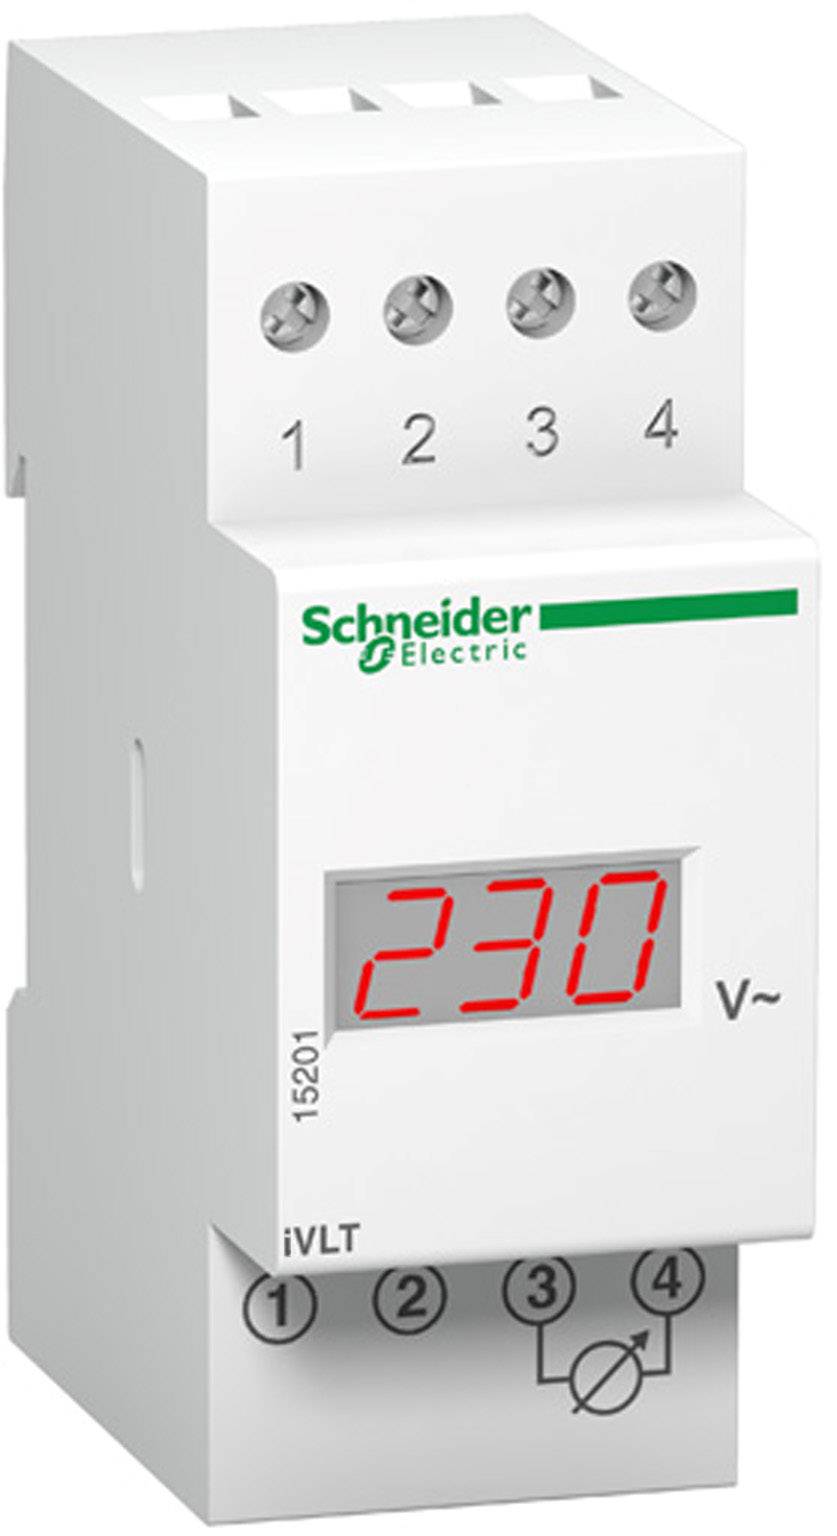 SCHNEIDER ELECTRIC Voltmeter 230 V Schneider Electric 15201